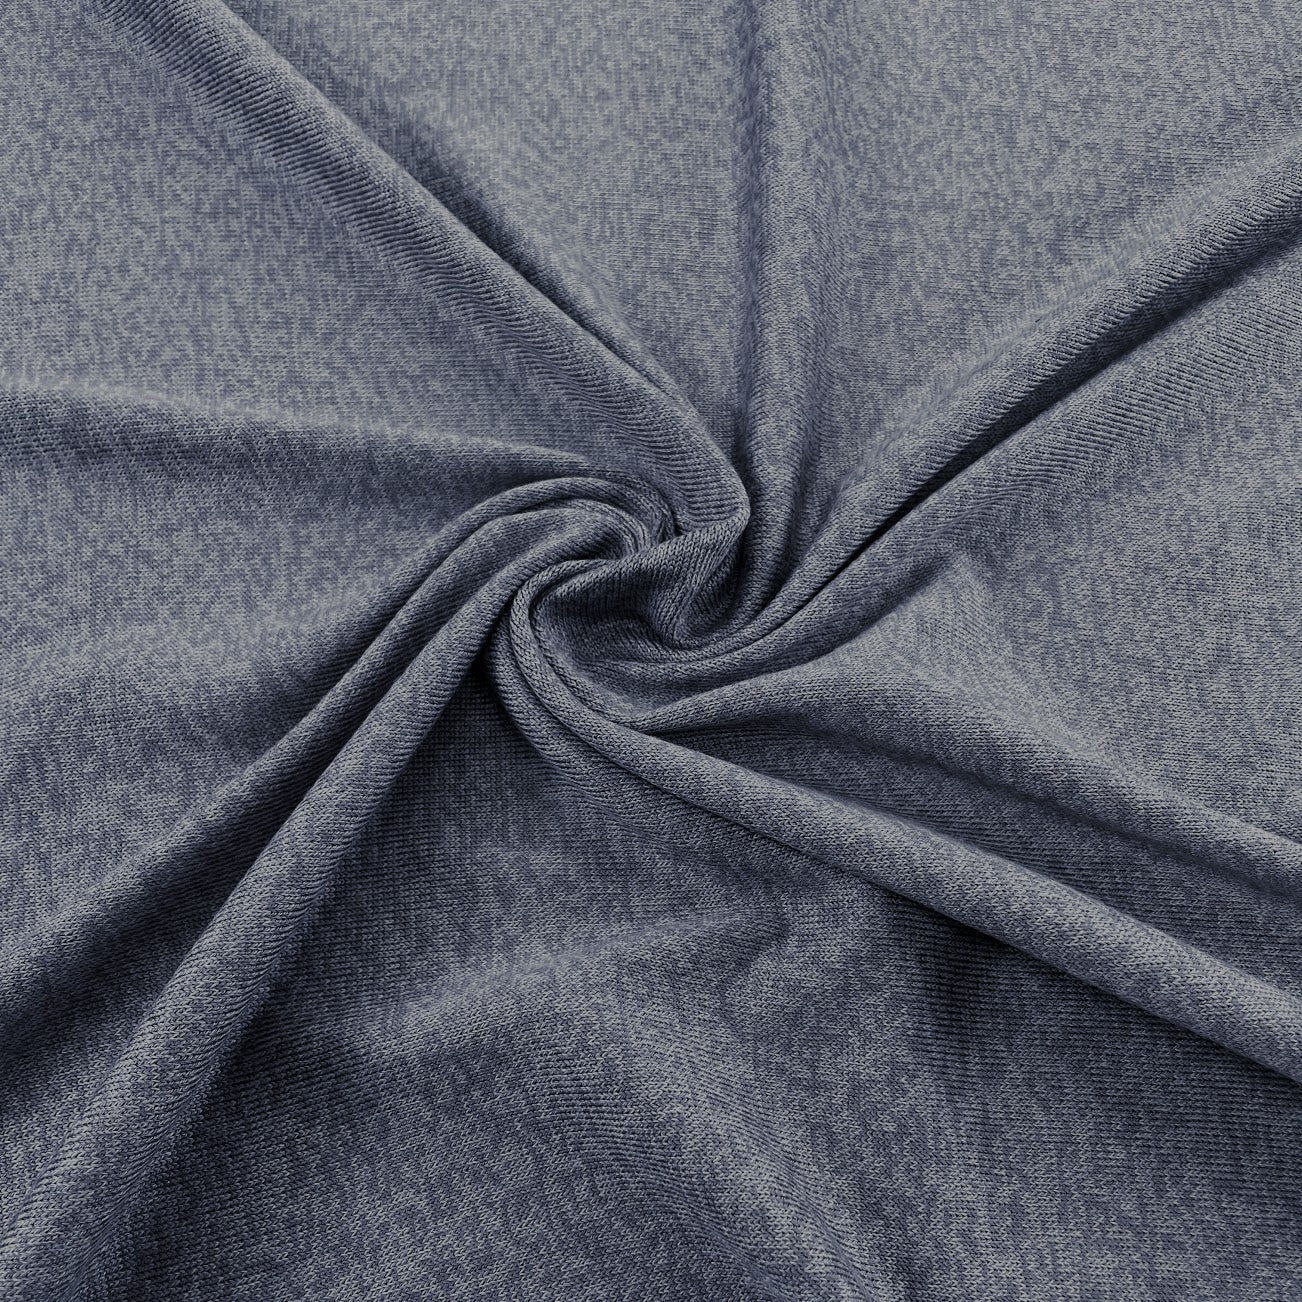 Tencel Lyocell Organic Cotton Sweater Knit - Steel Grey